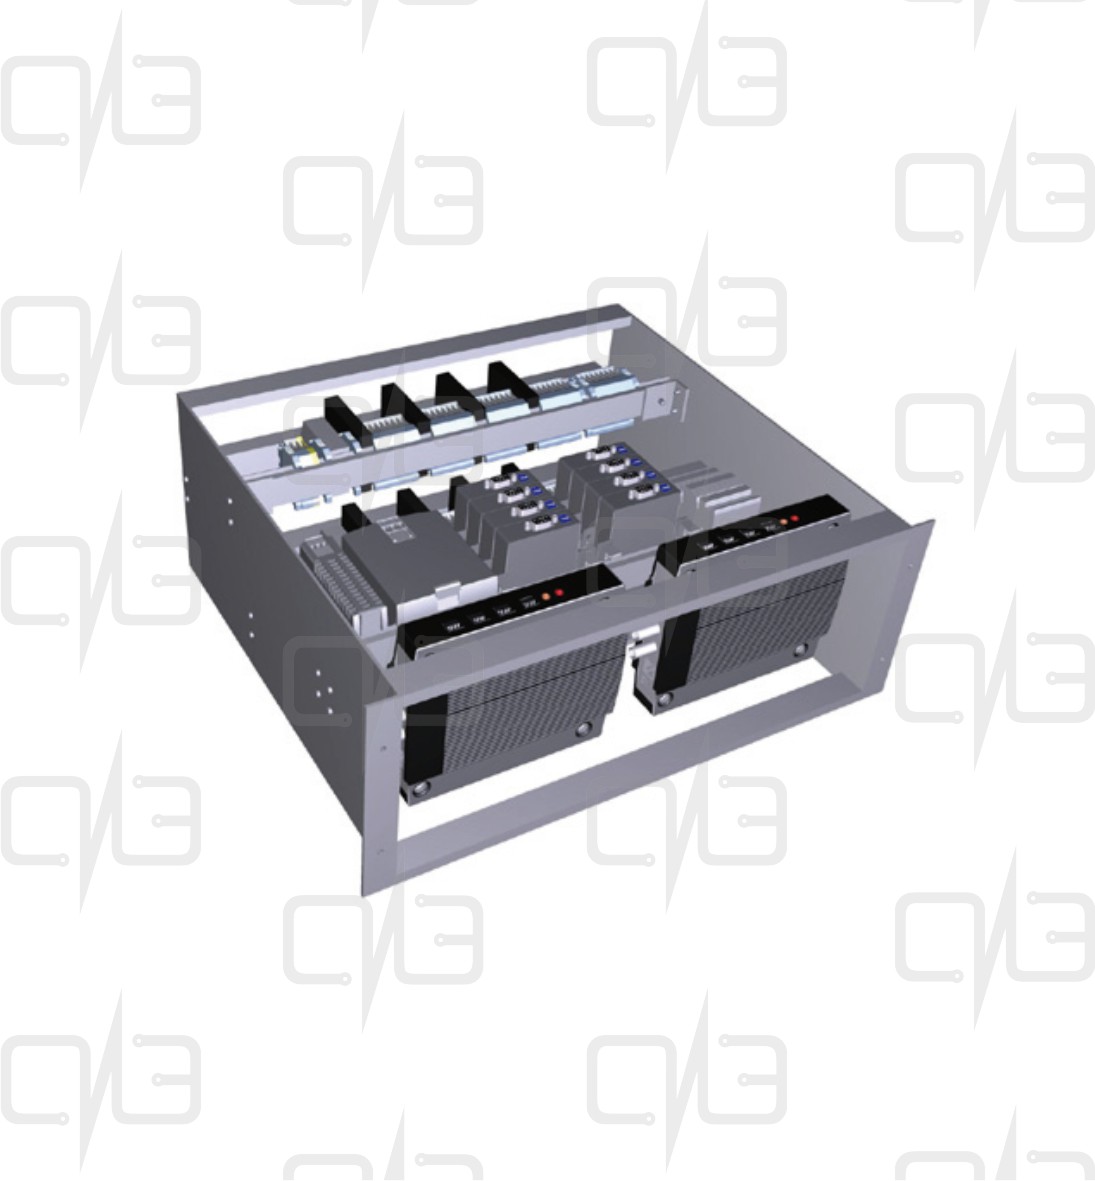 T05-Q2-00-111 Connection Rack - Q2 Видеосервер с источником питания и точкой доступа Ethernet